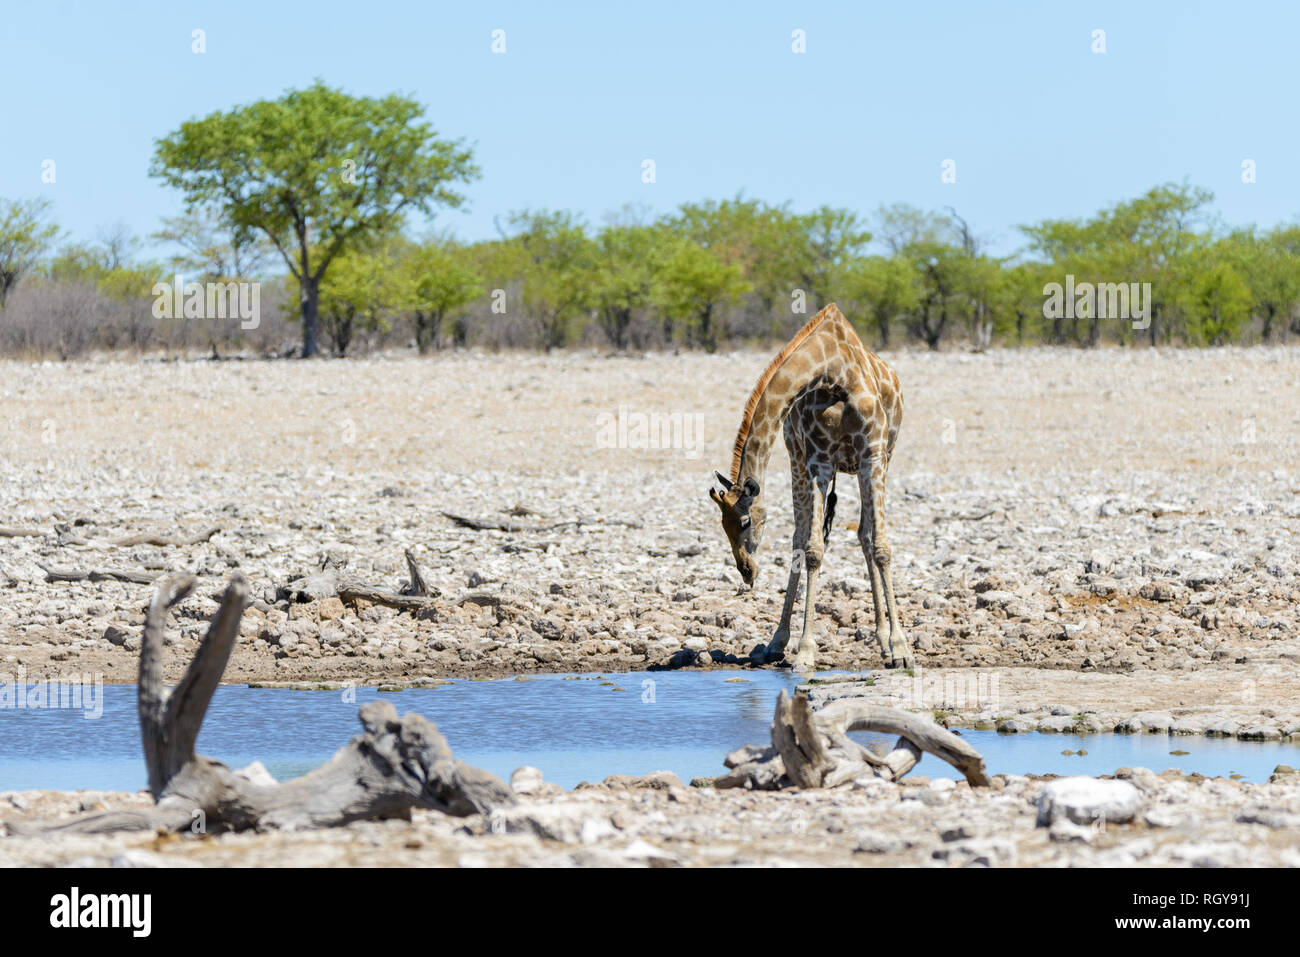 Giraffe on waterhole in the African savanna Stock Photo